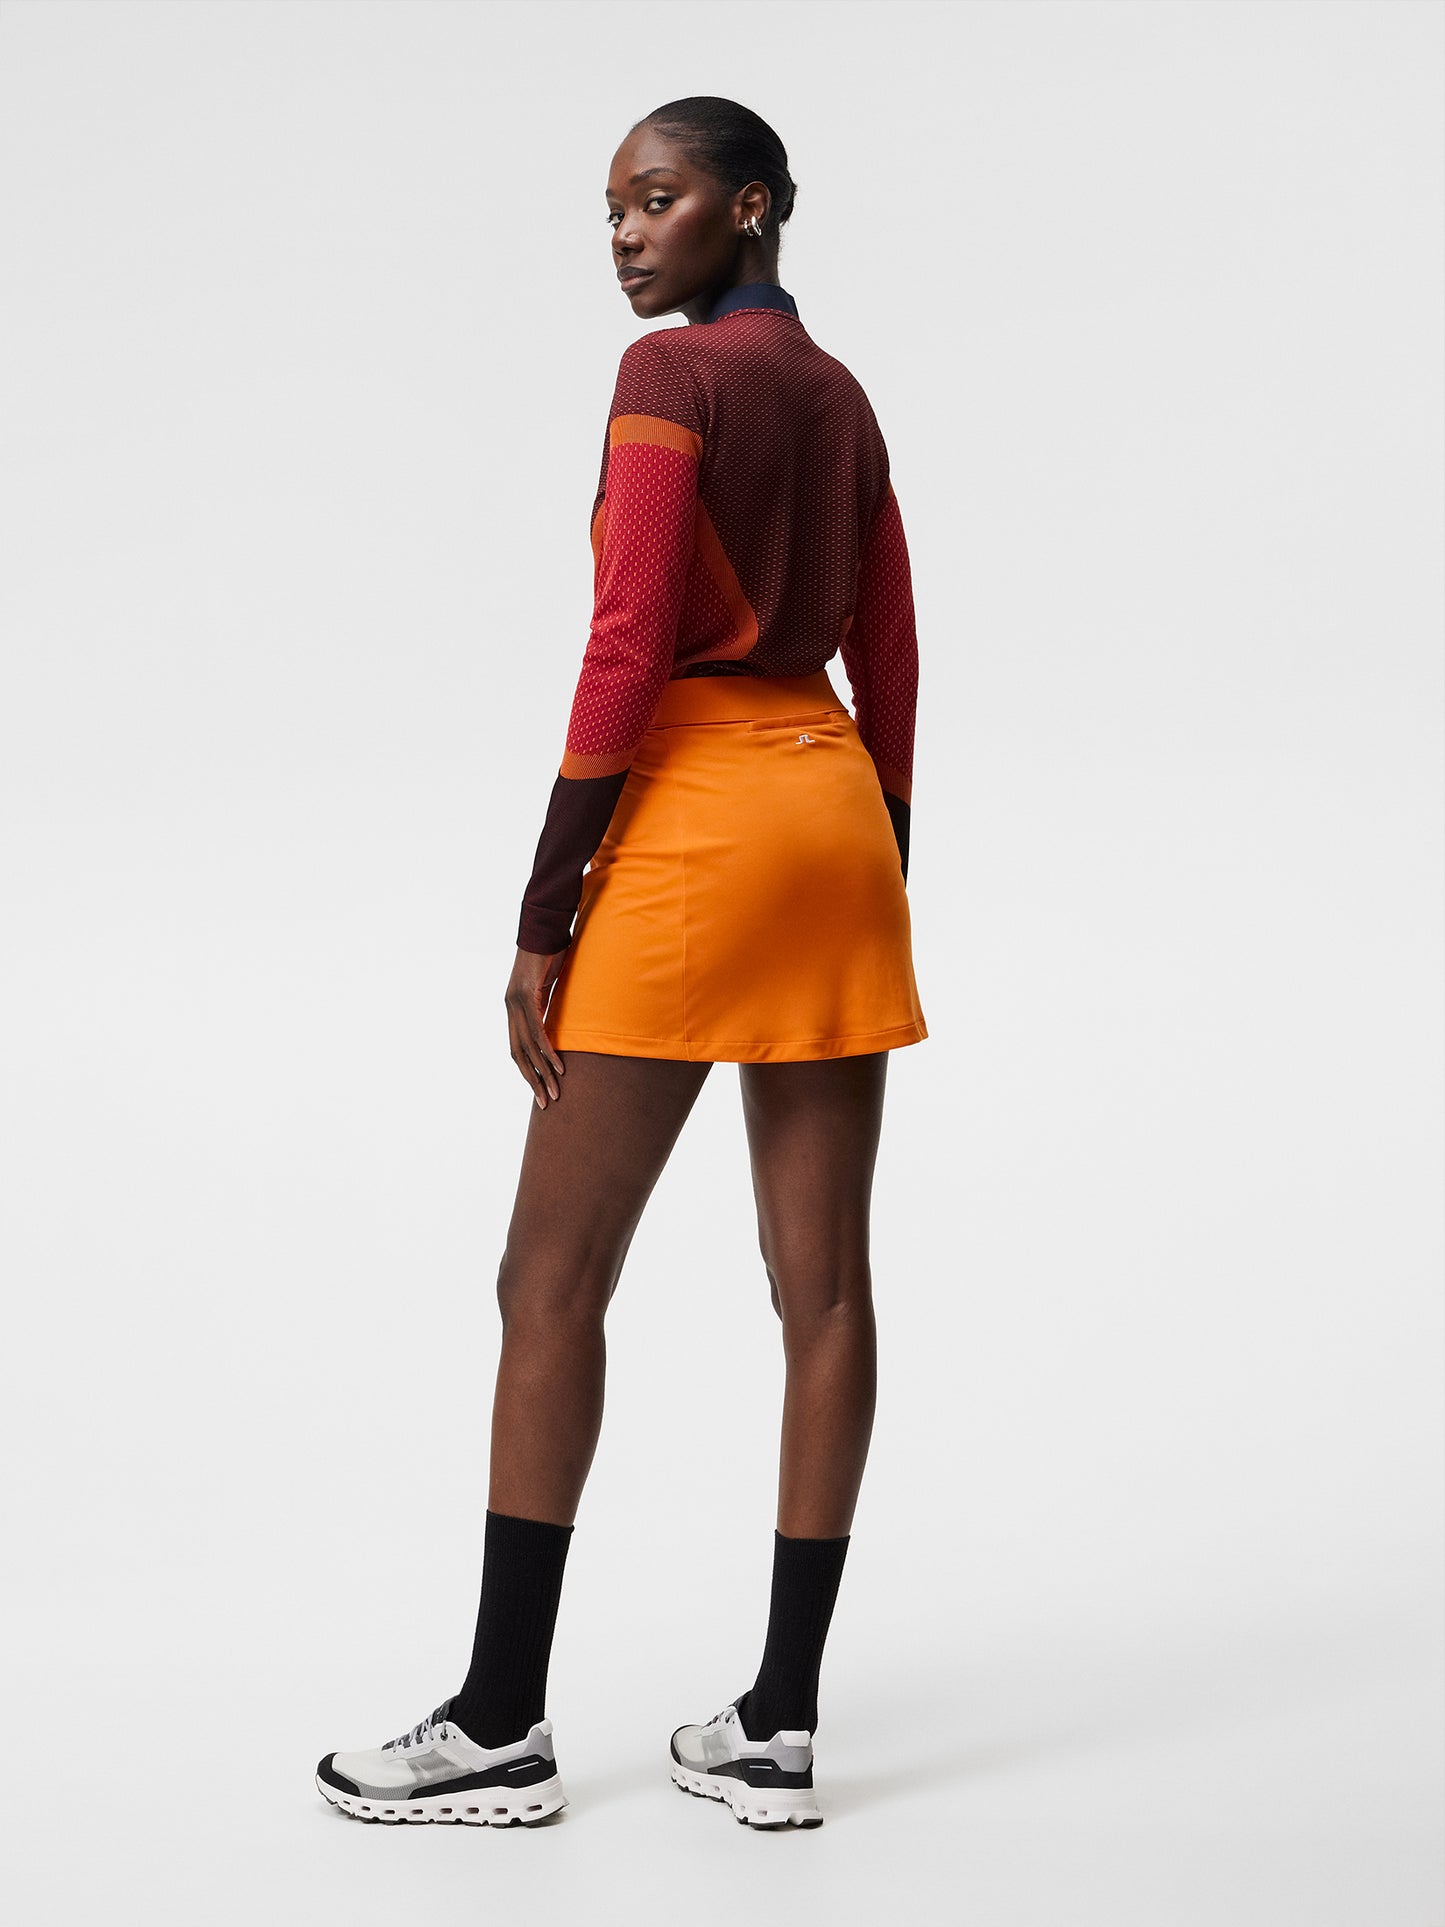 Amelie Mid Skirt / Russet Orange